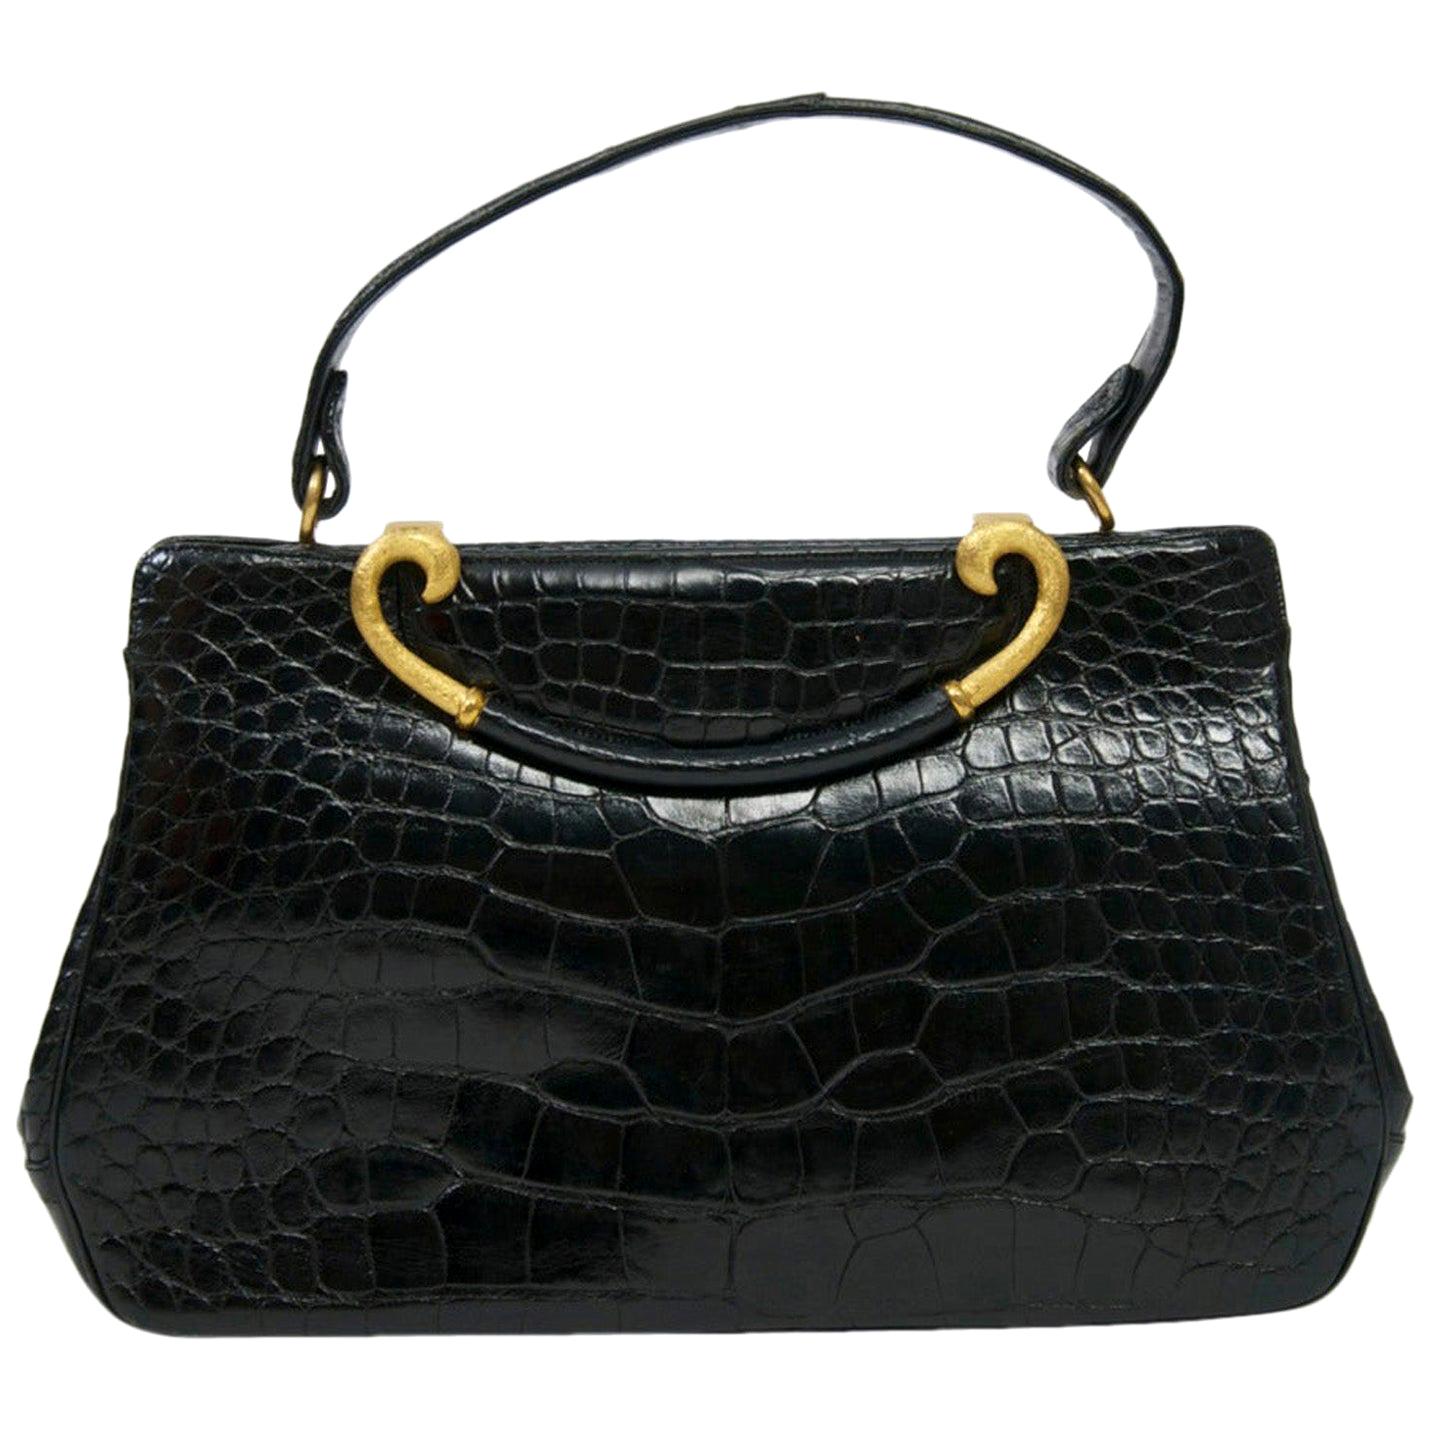 Rosenfeld 1960s Black Faux Alligator Handbag For Sale